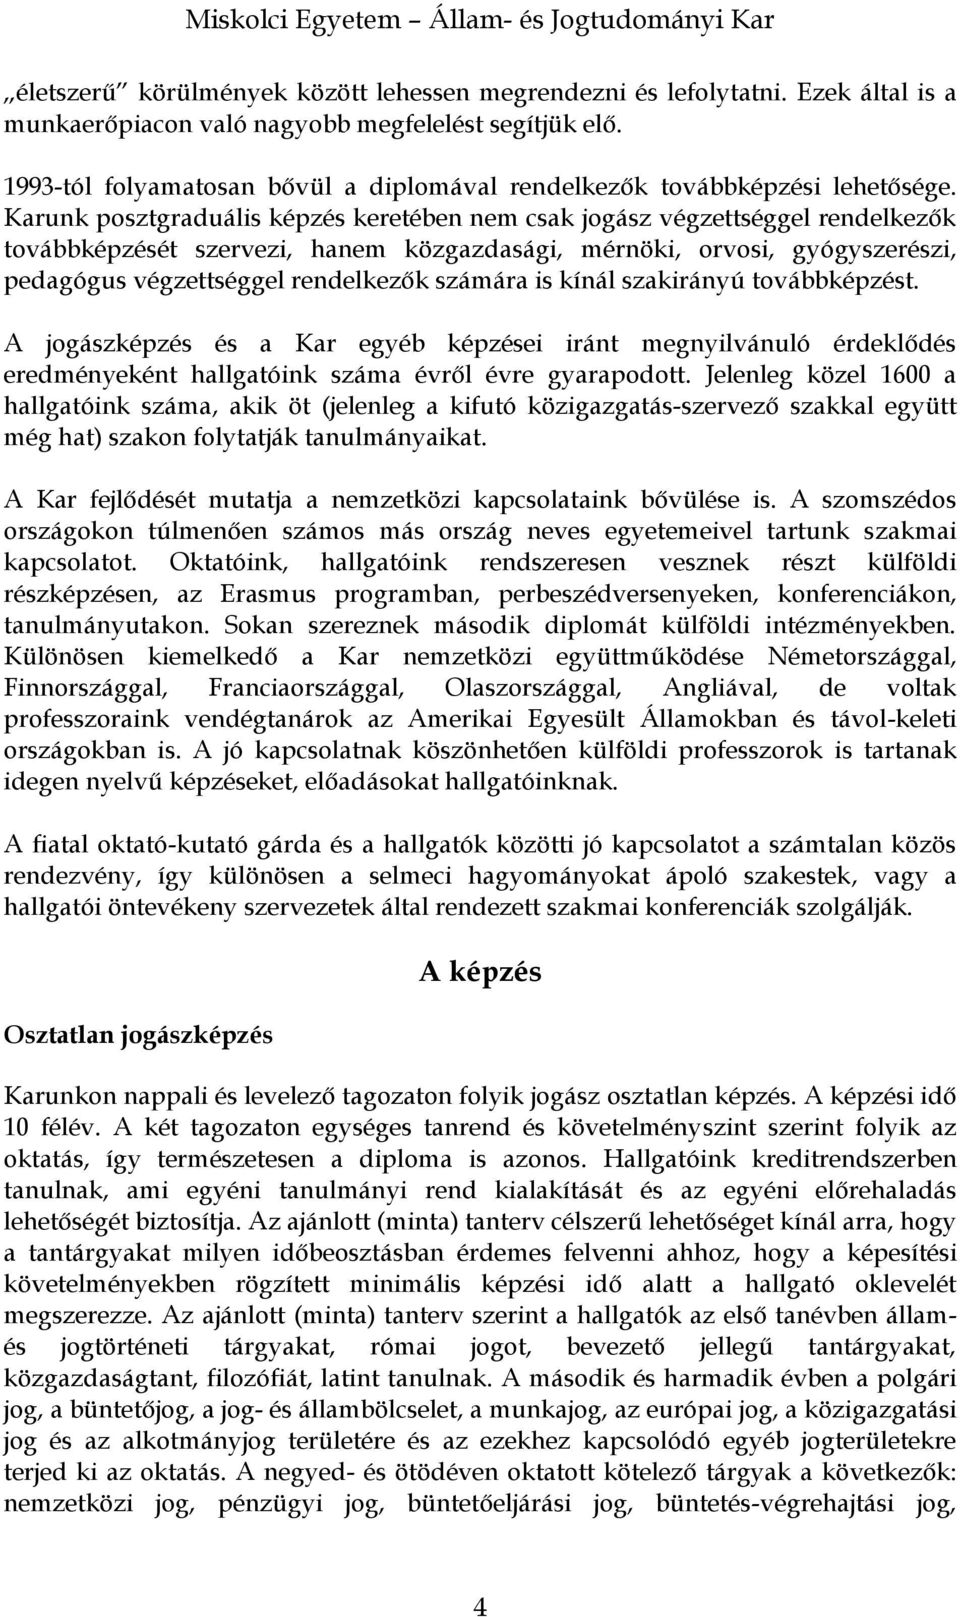 Miskolci Egyetem. Állam- és Jogtudományi Kar - PDF Free Download